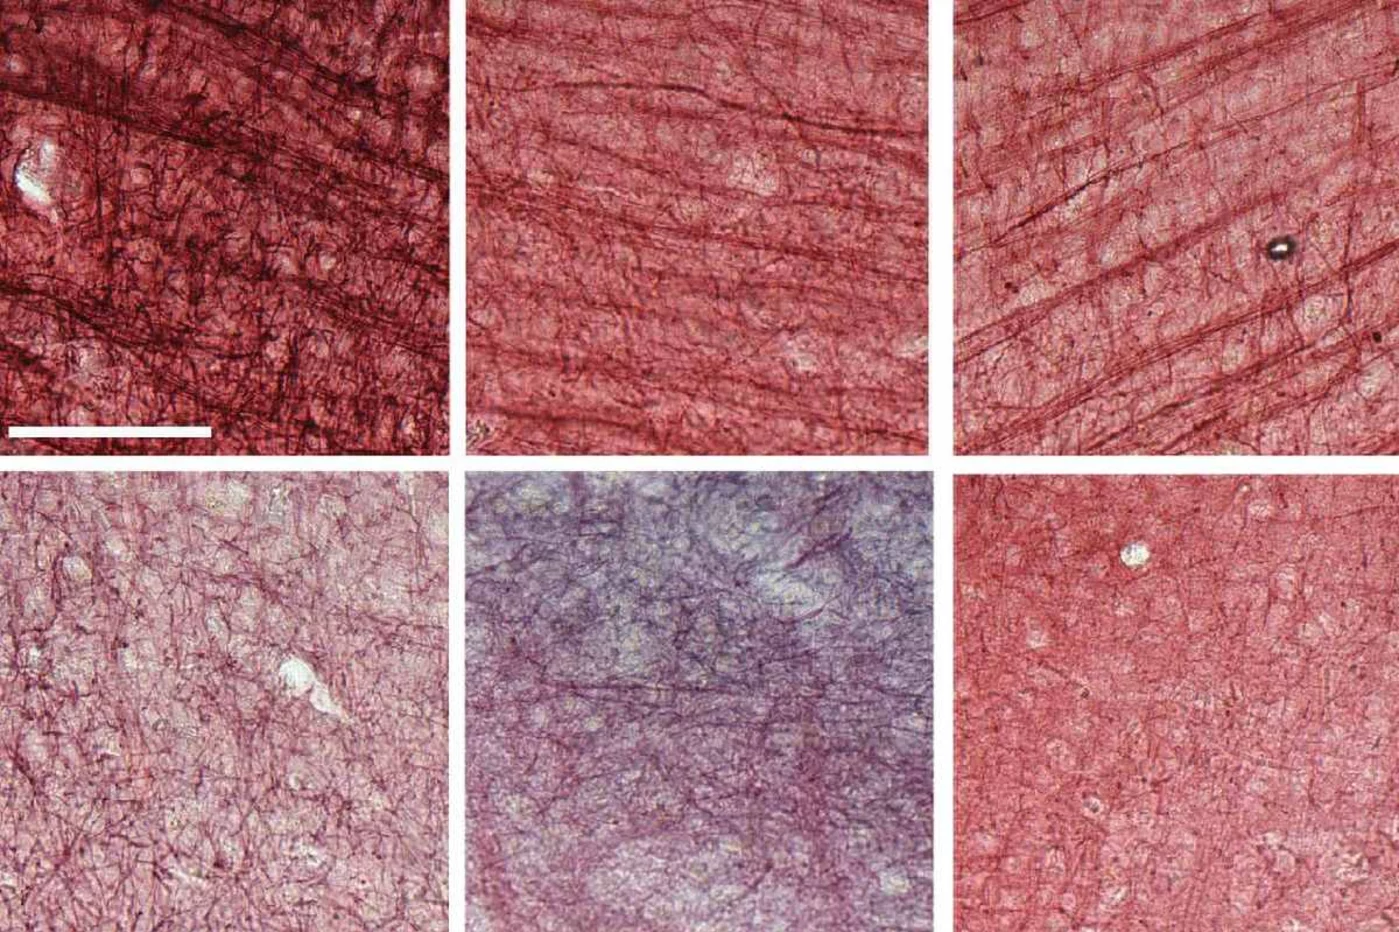 Muestras de tejido cerebral postmortem de tres individuos revela menos mielinización en aquellos con una copia del gen ‘APOE4’ (fila inferior). Foto: MIT.